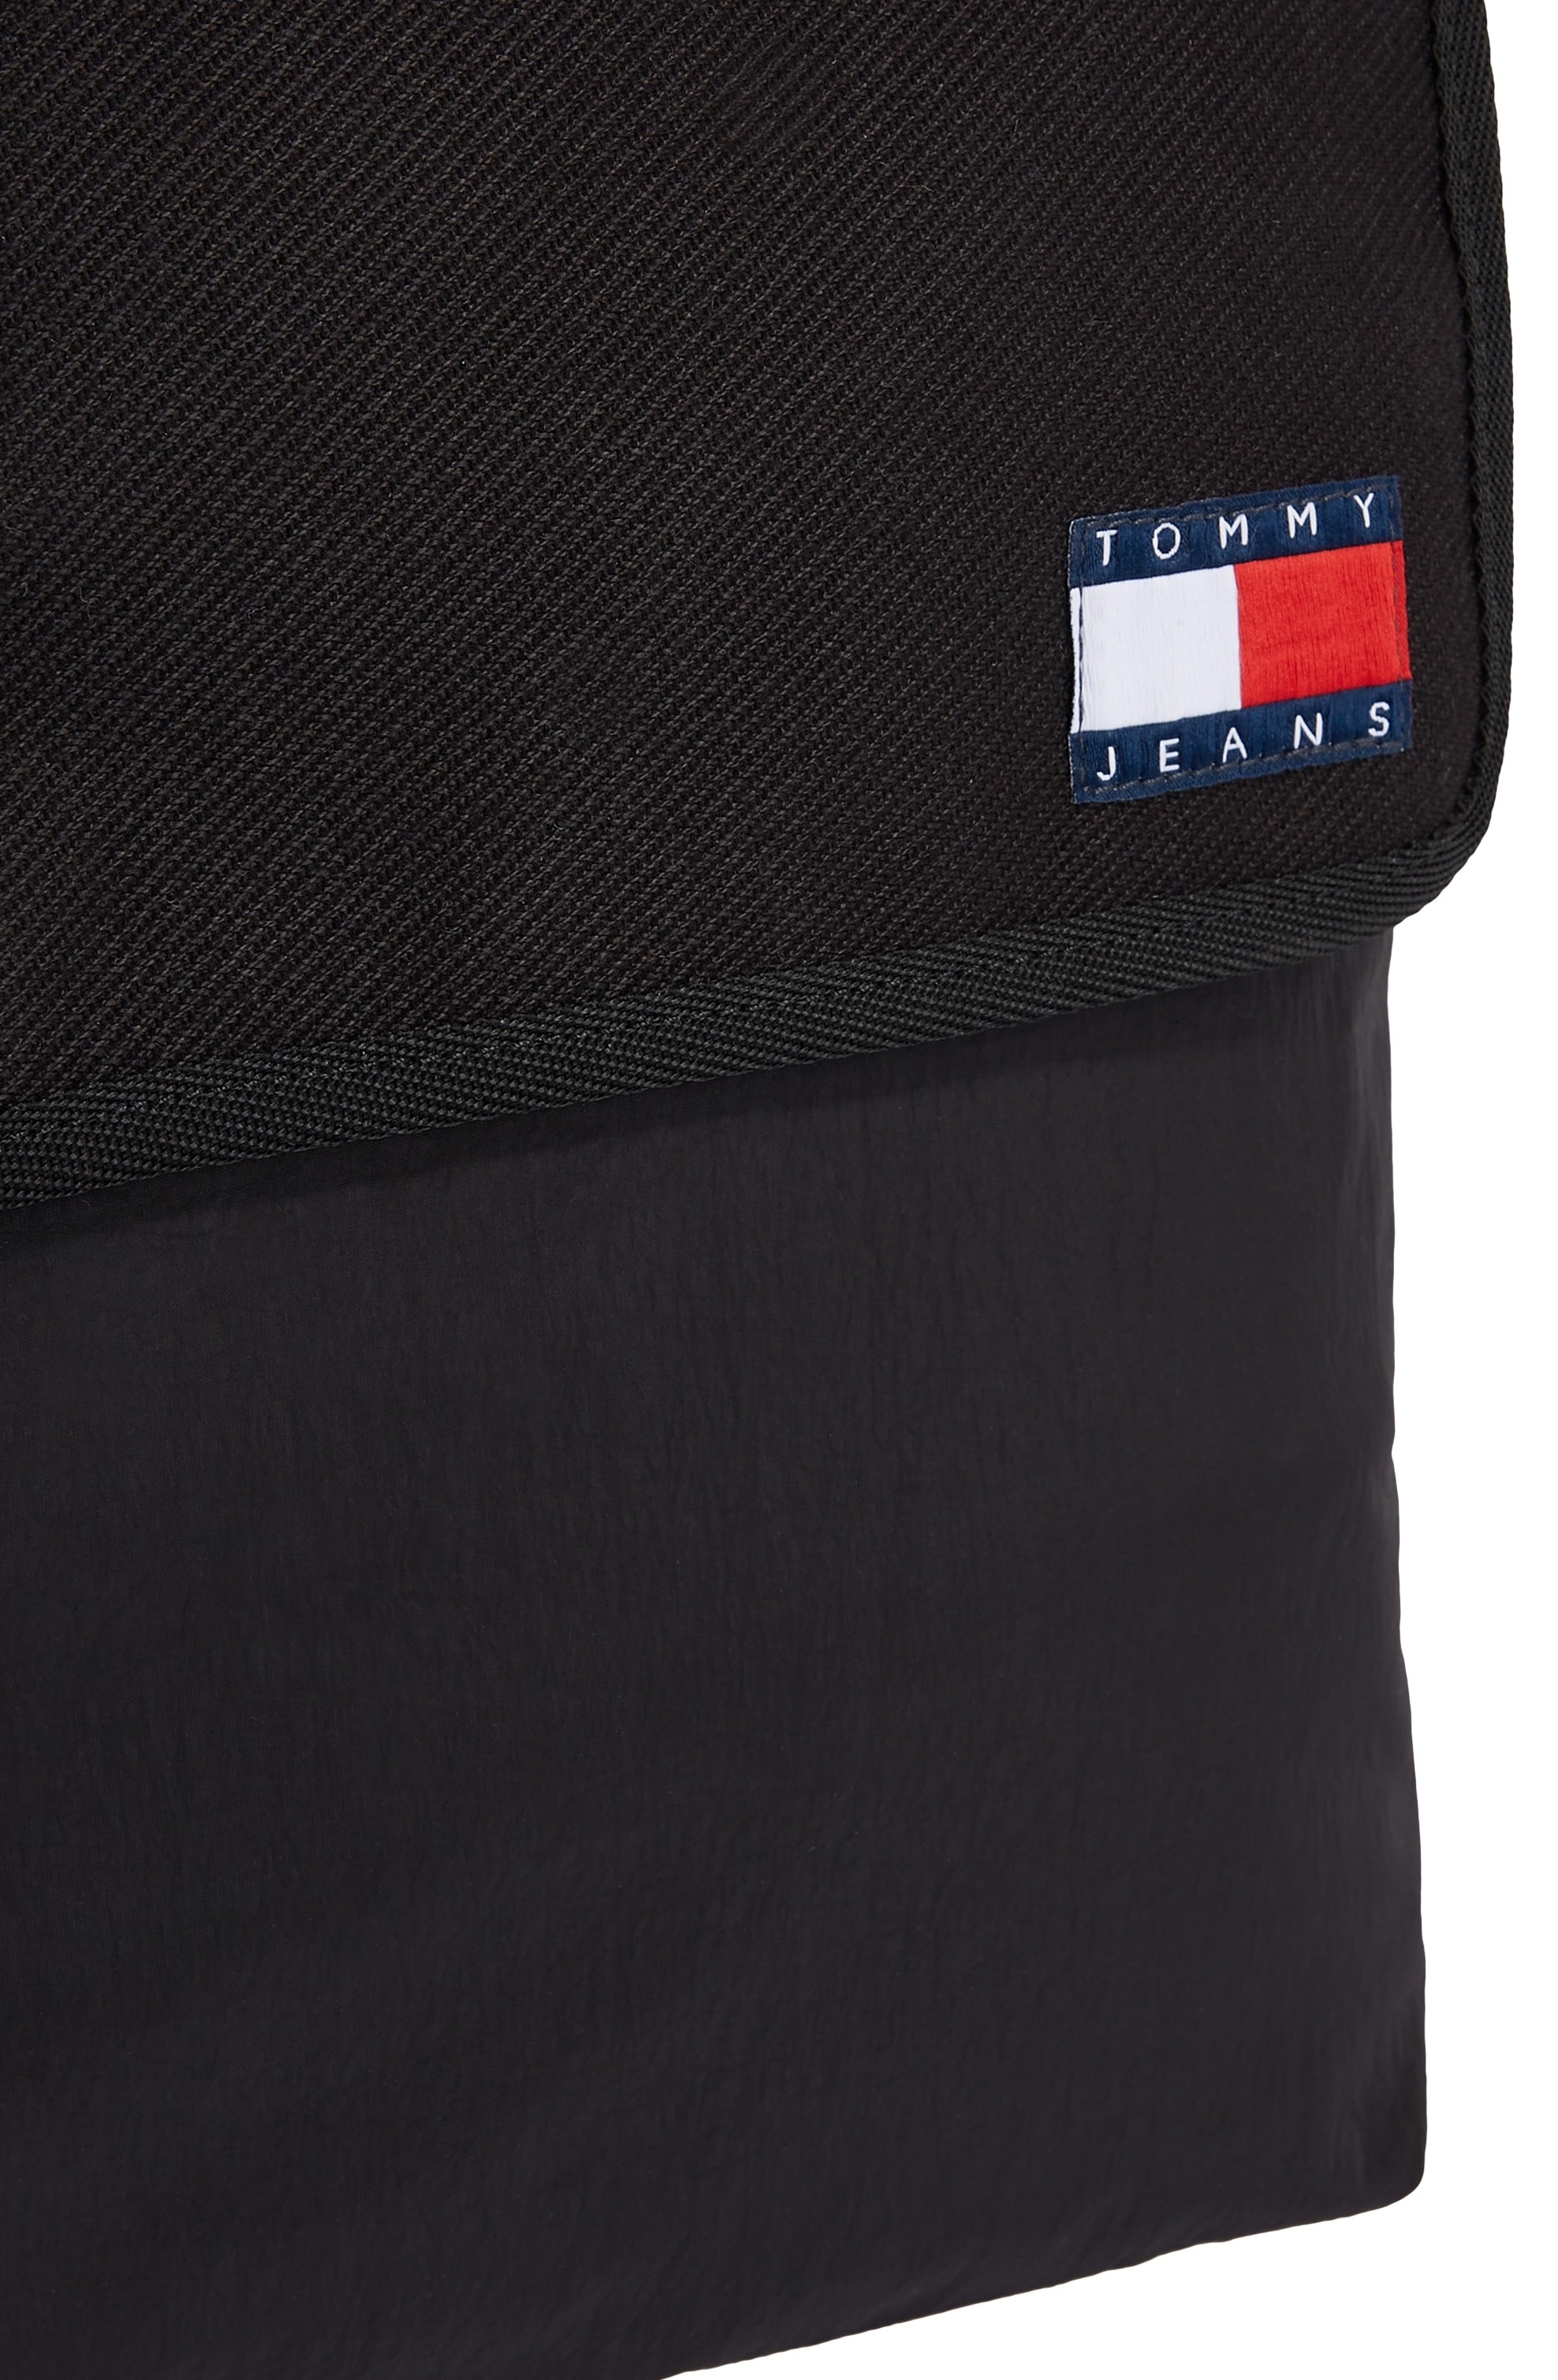 Tommy Jeans Messenger Bag »TJM MISSION MESSENGER«, perfekt für Uni oder Arbeit